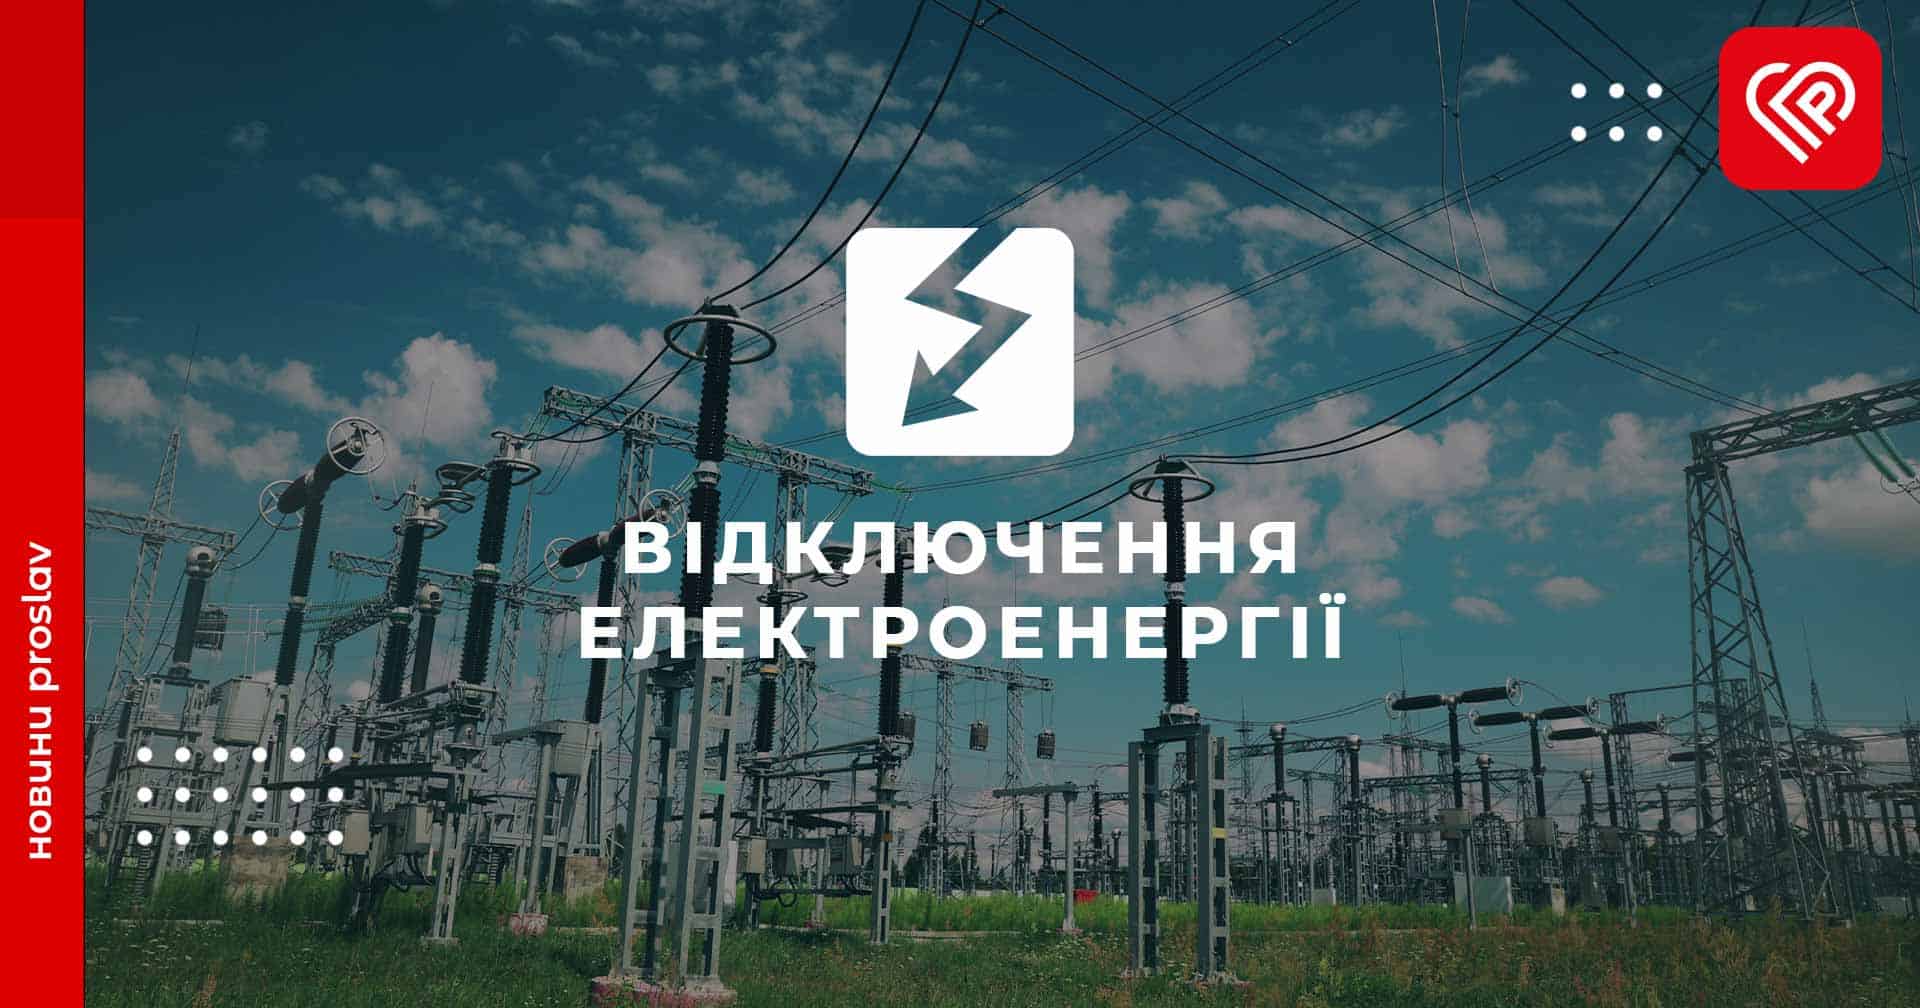 У Циблях, Переяславі і Стовп’ягах плануються відключення електроенергії: коли і на яких вулицях